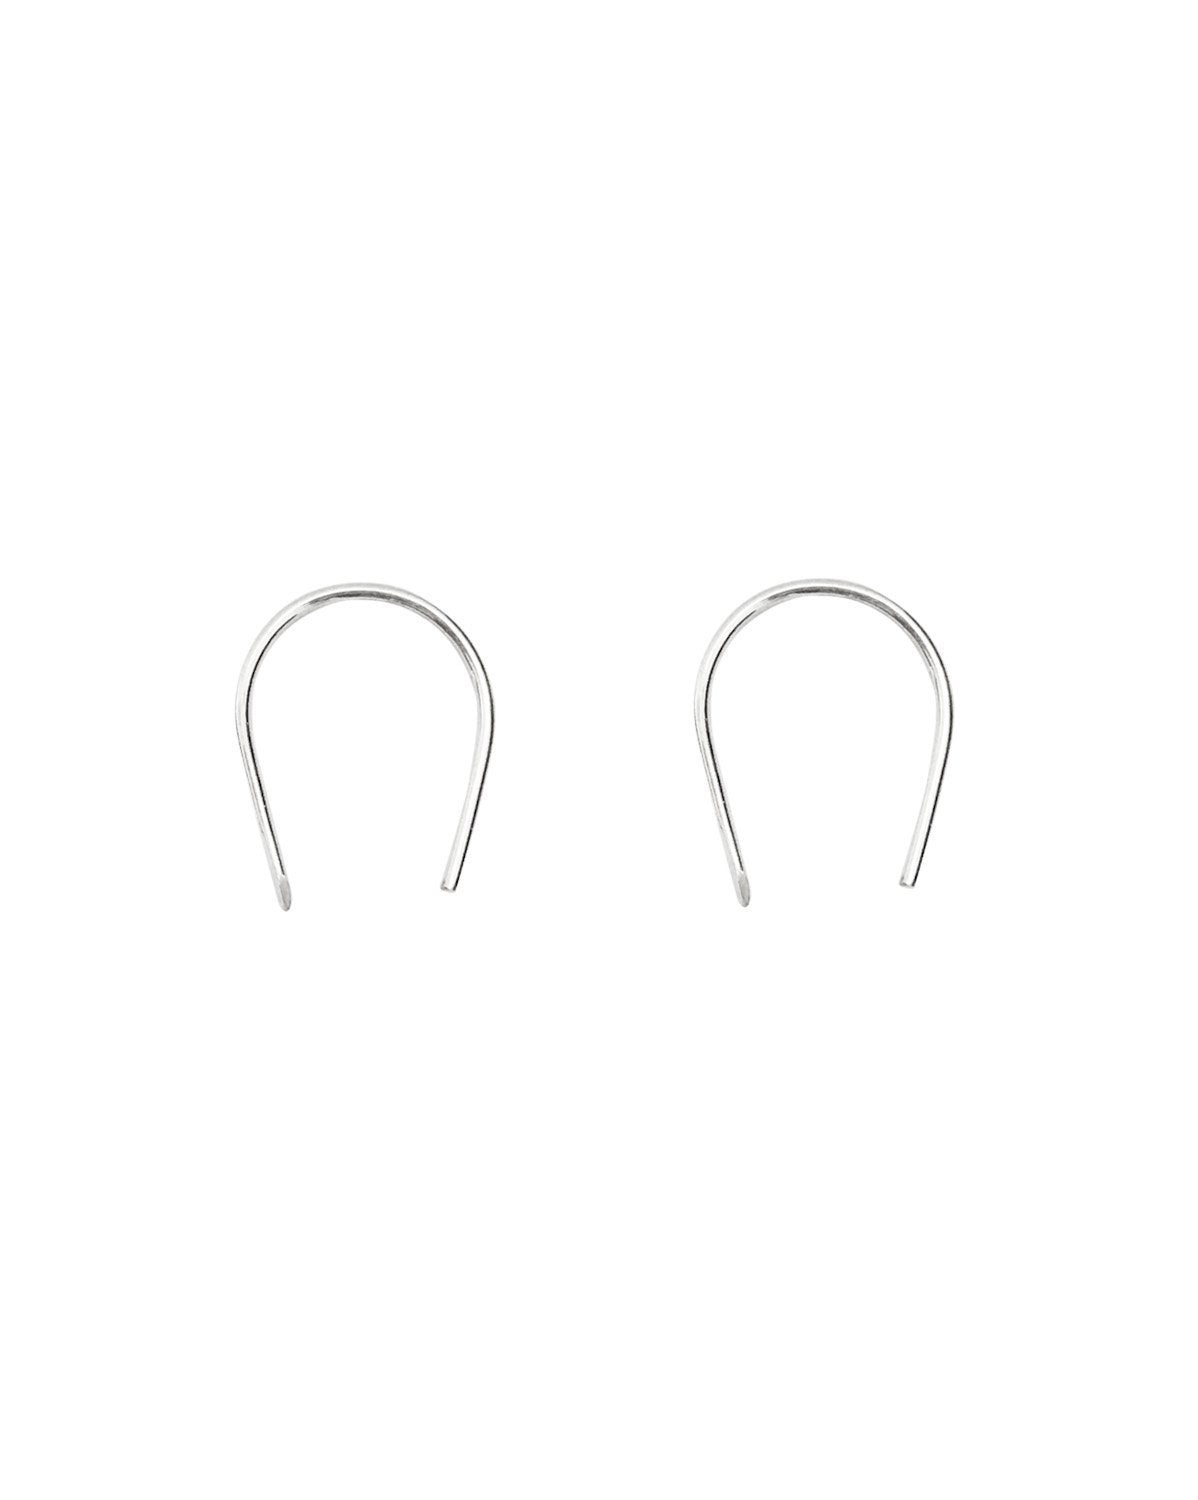 Arc Earrings in sterling silver